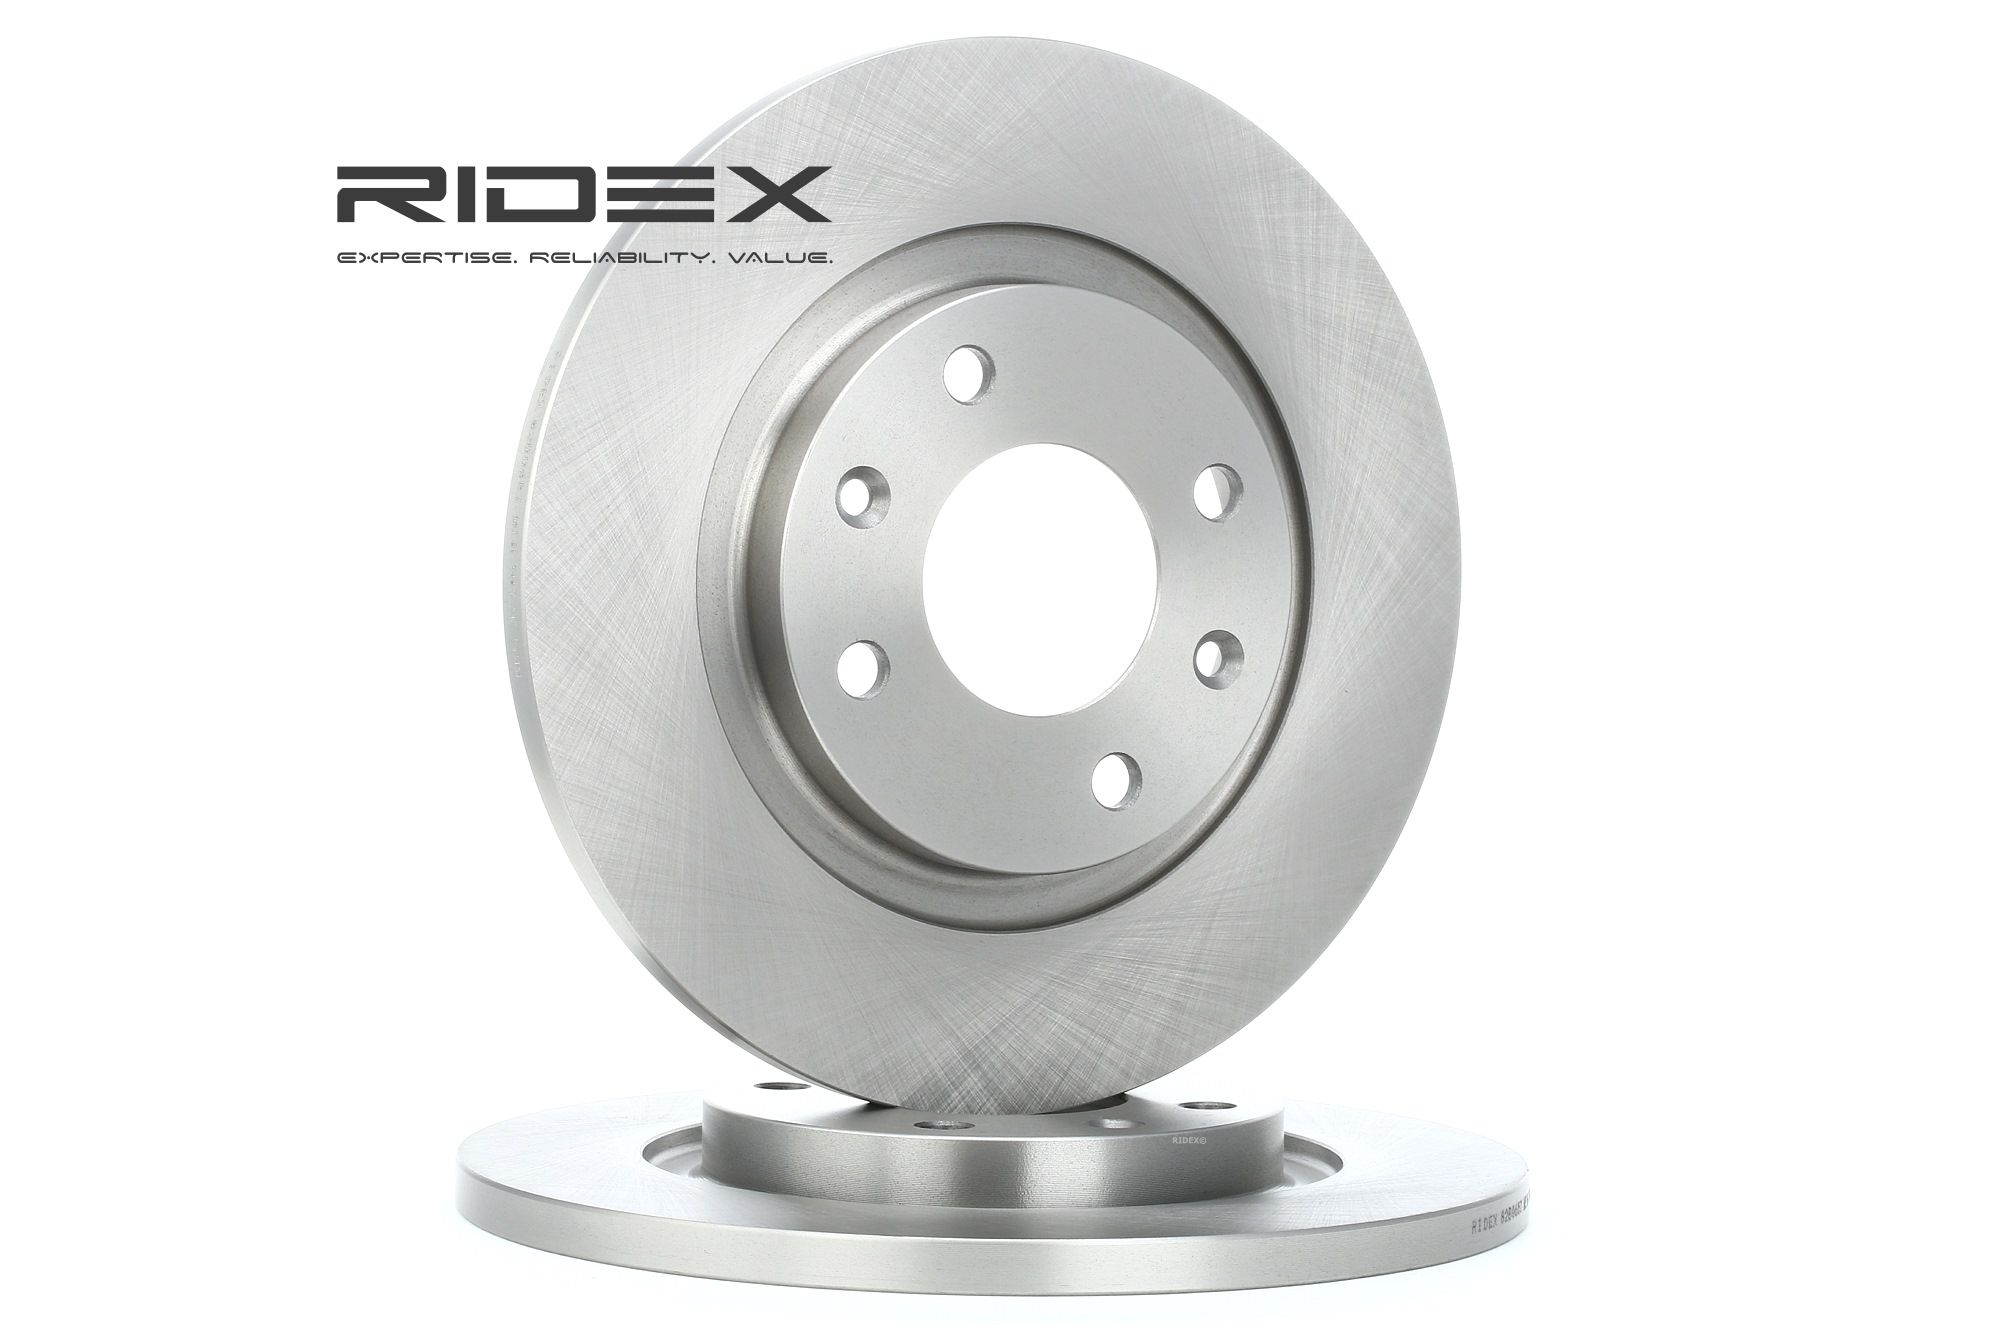 RIDEX 82B0657 Citroen C2 Enterprise 2009 Kit dischi freno Pieno, Non rivestito, senza bullone fissaggio ruota, senza mozzo portaruota